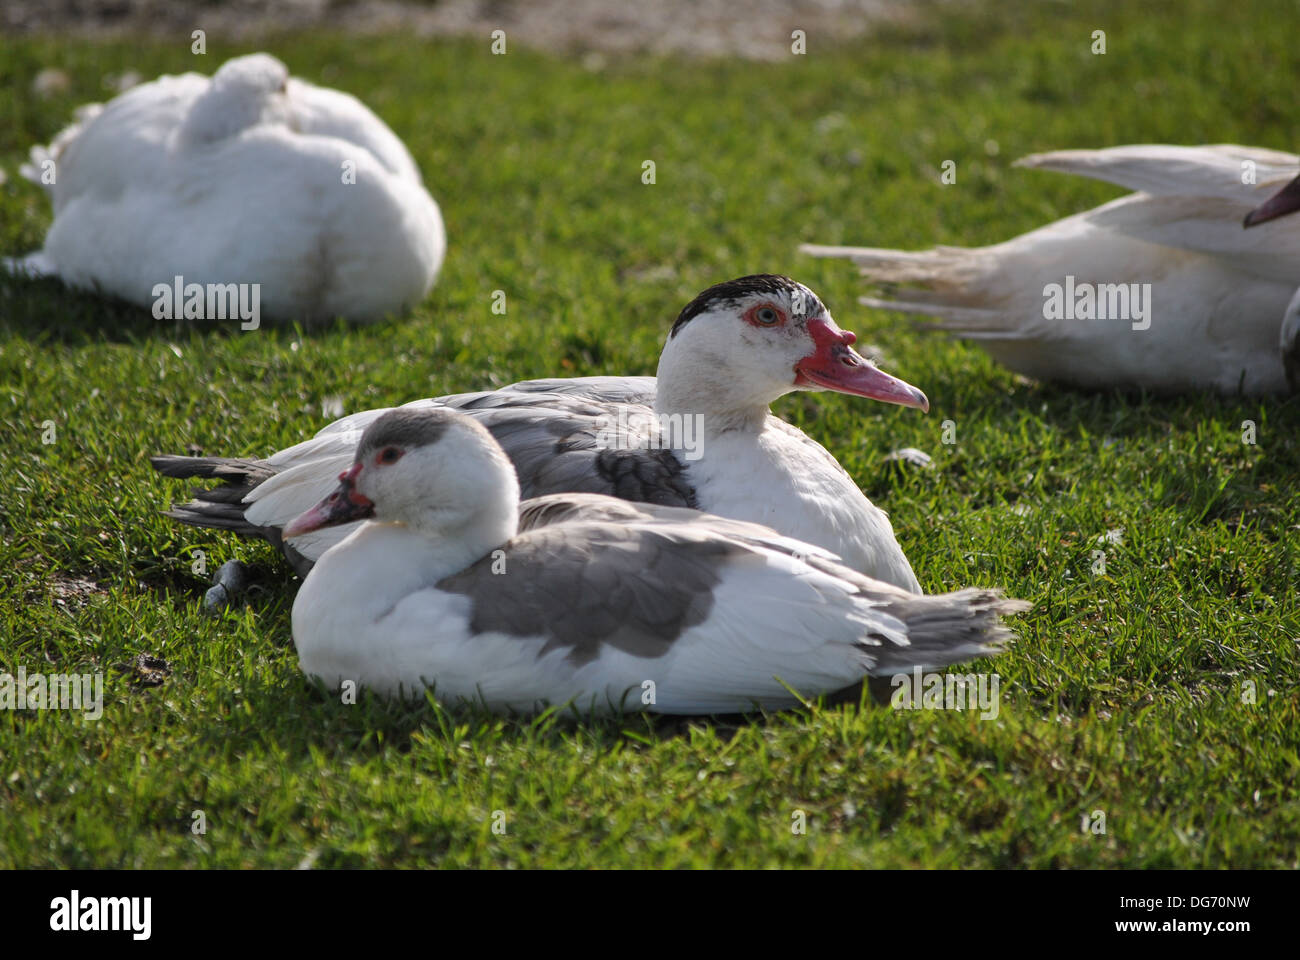 Una pareja de patos Muscovy sobre hierba Foto de stock